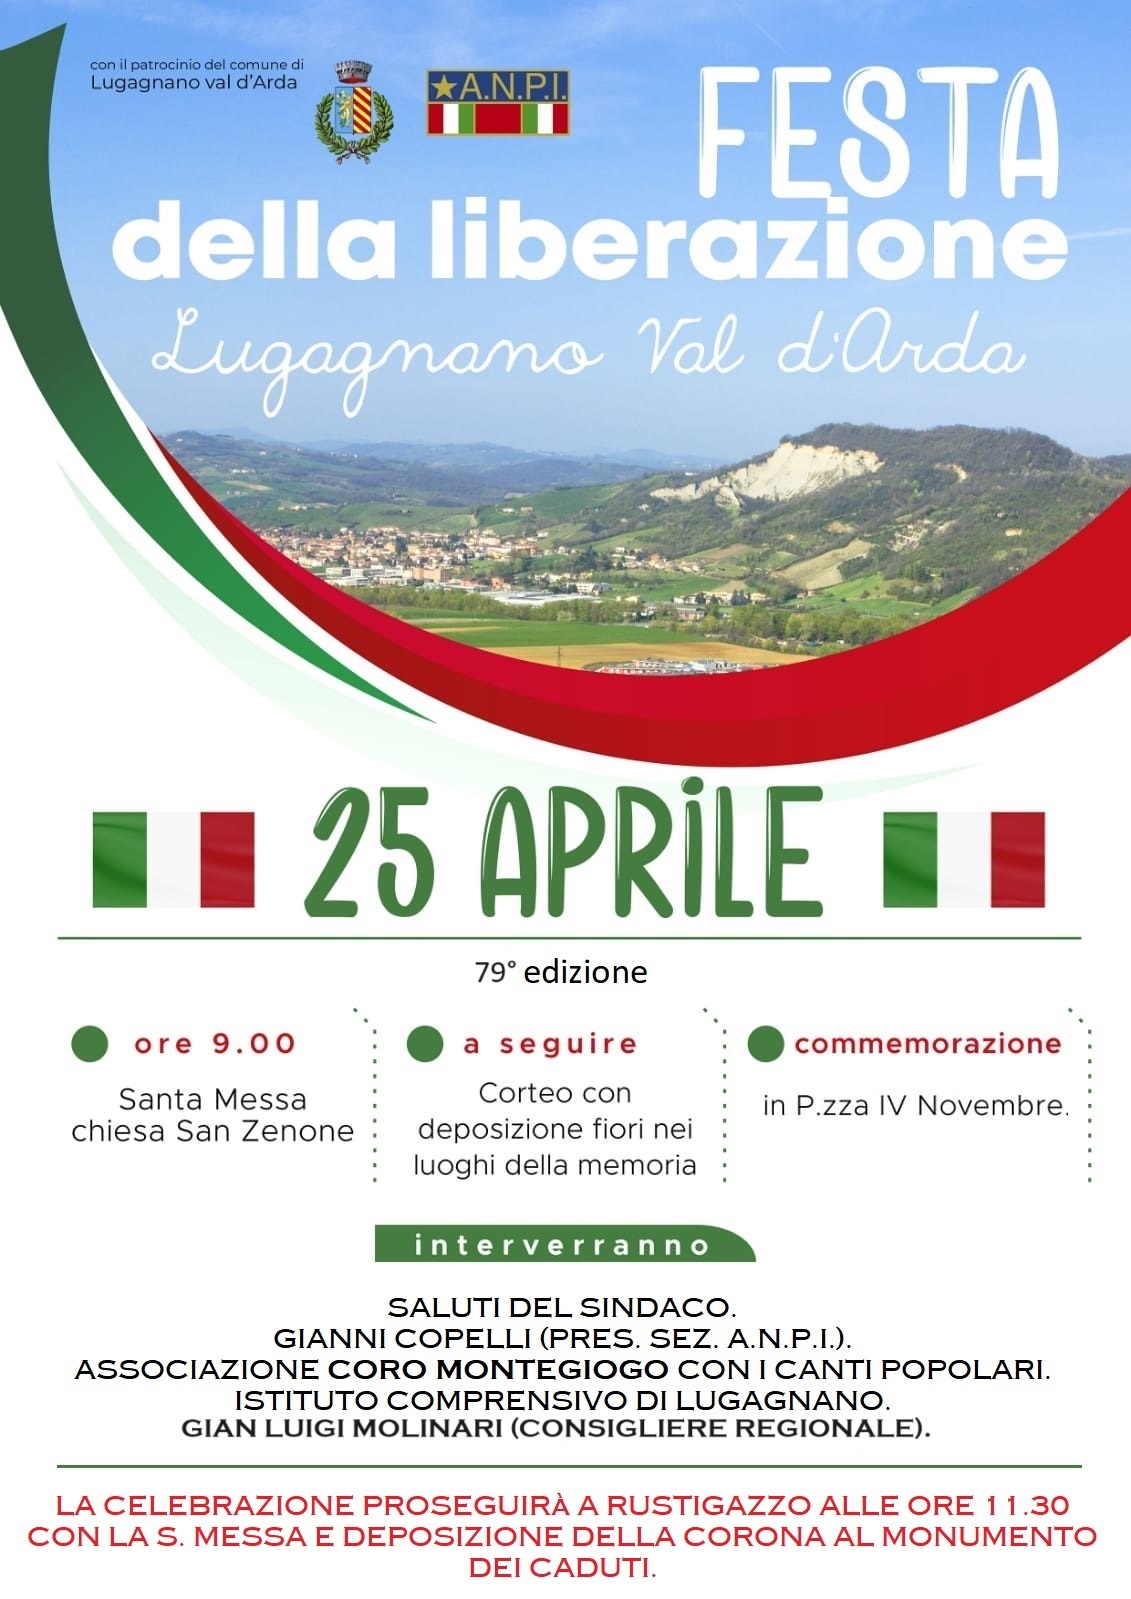 Commemorazione Festa della Liberazione - Lugagnano Val d'Arda e Rustigazzo